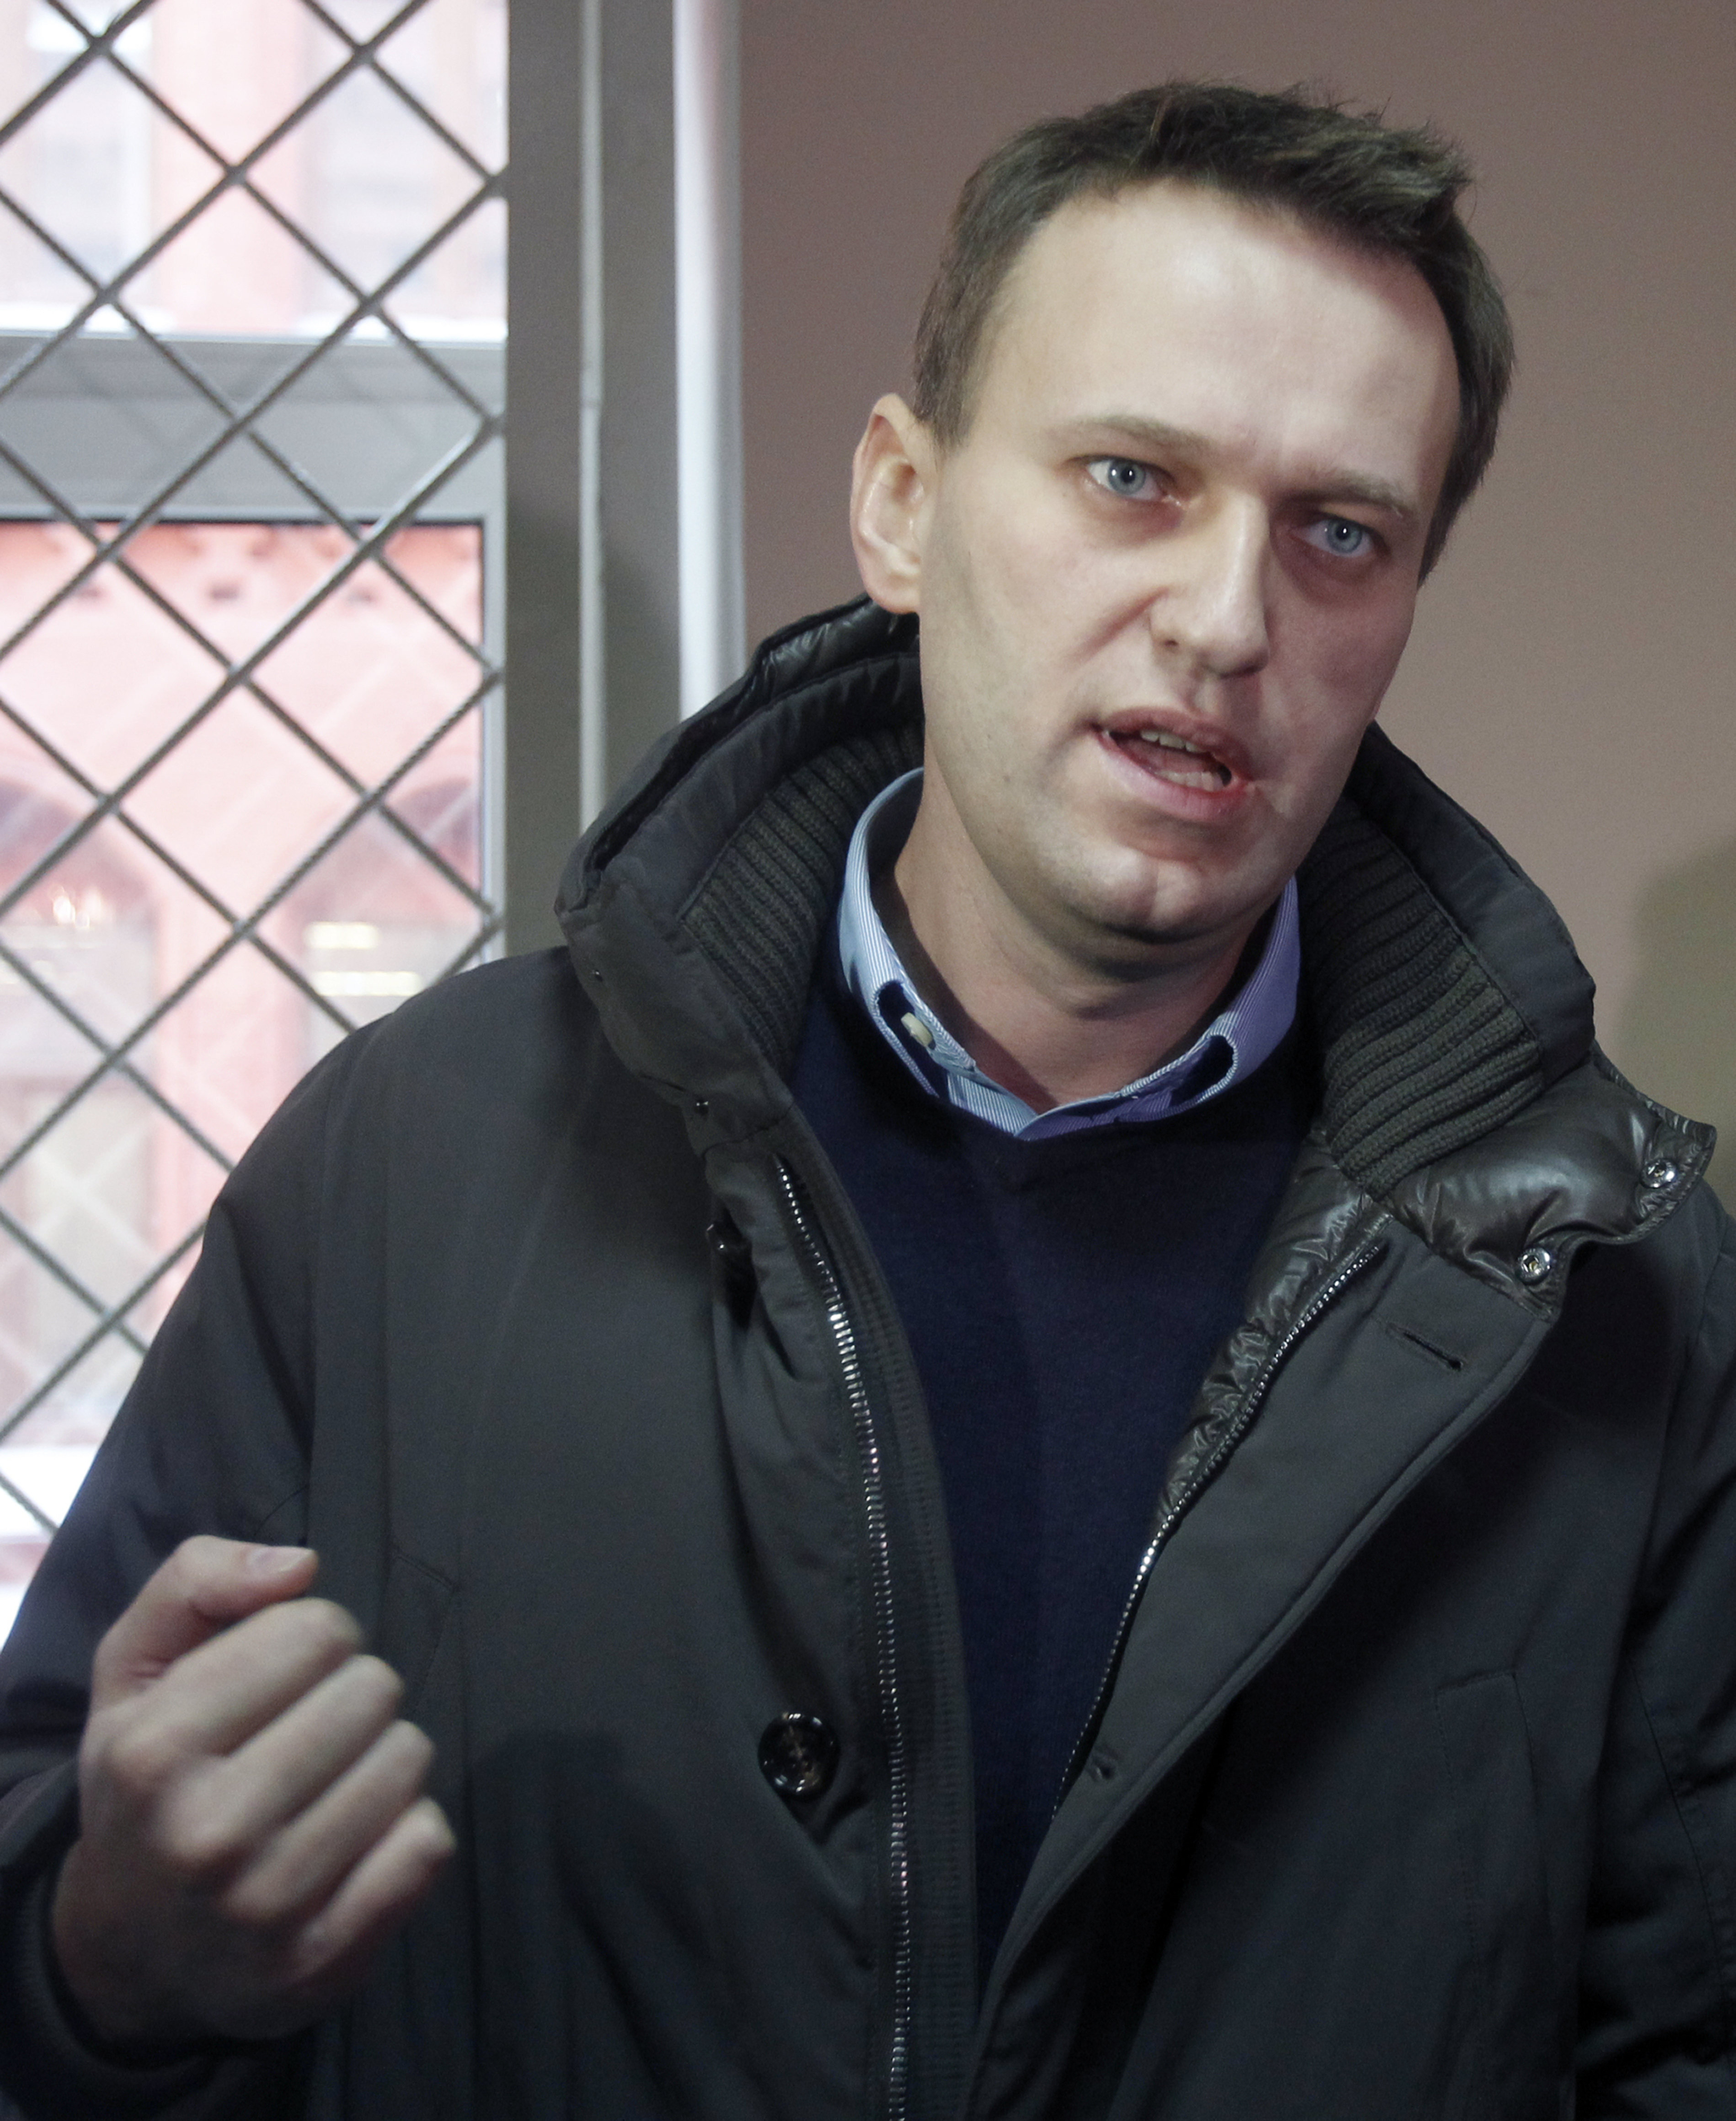 지난 16일(현지시간) 러시아 시베리아 감옥에서 돌연 사망한 알렉세이 나발니가 2012년 3월 러시아 당국의 횡령 혐의 기소에 맞서 모스크바의 법정에서 자신의 입장을 피력하는 모습. 모스크바 AP 연합뉴스